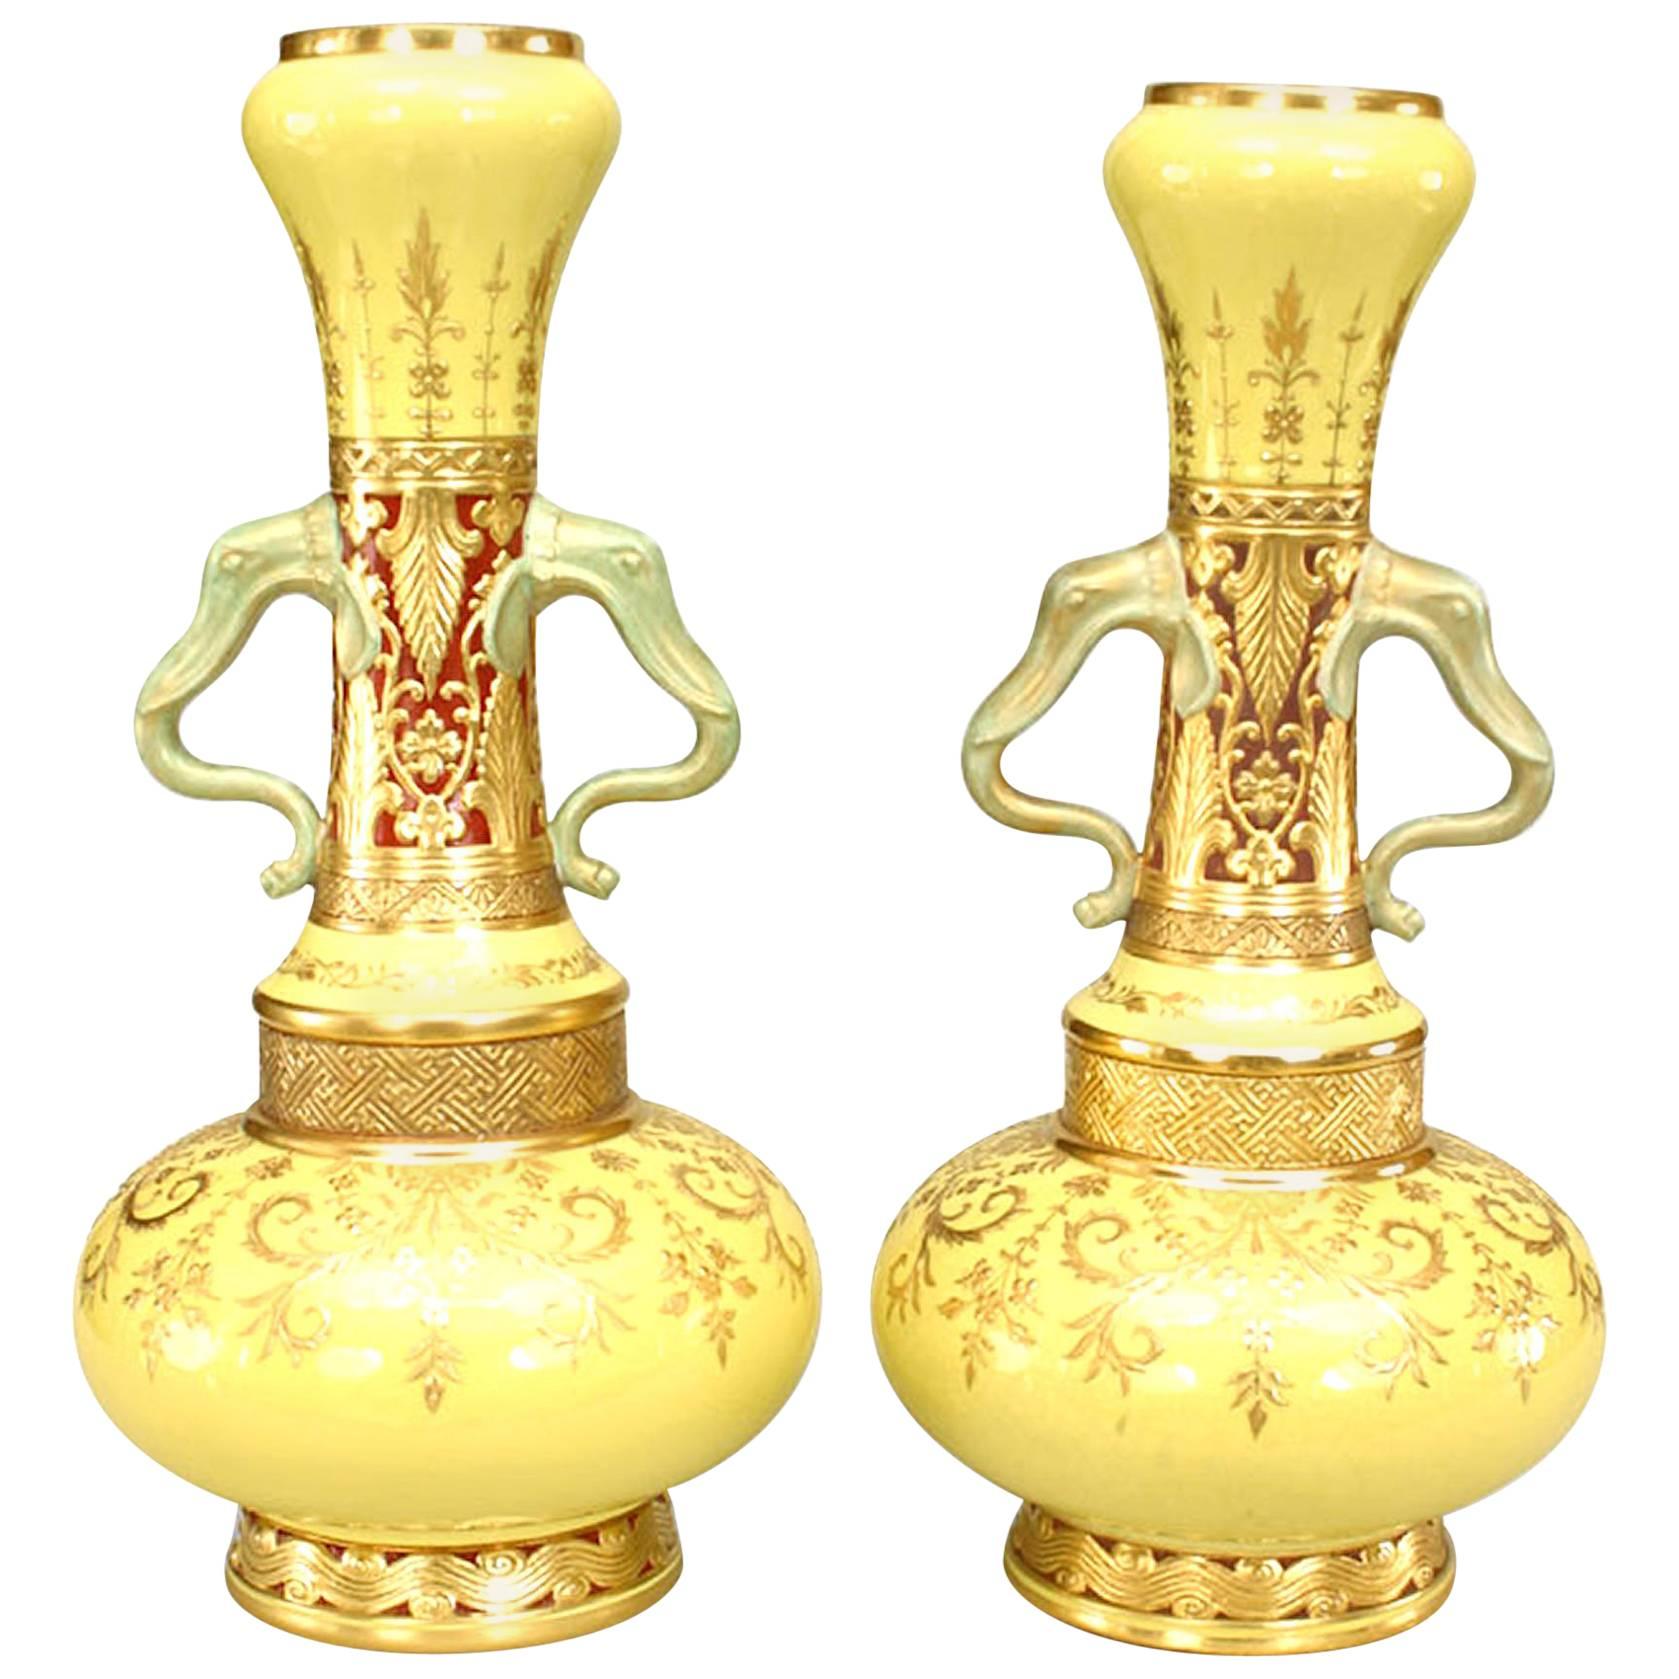 Zwei englische viktorianische Minton-Flaschenvasen aus gelbem Porzellan